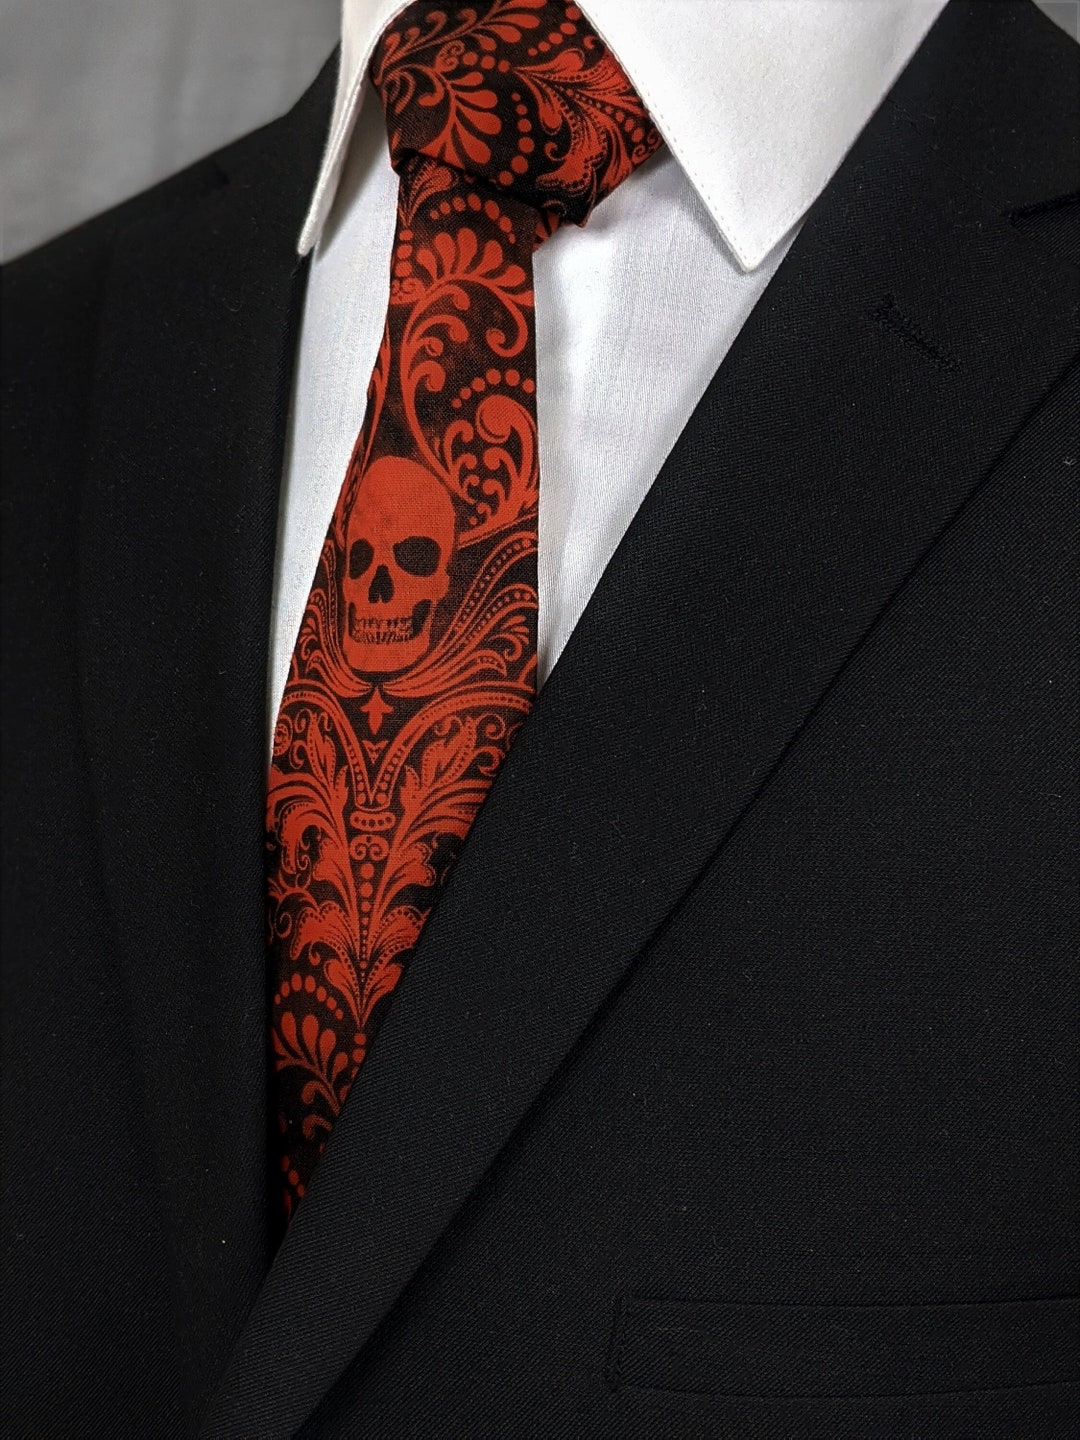 Orange Skull Neck Tie Mens Black With Orange Skull Tie. - Etsy